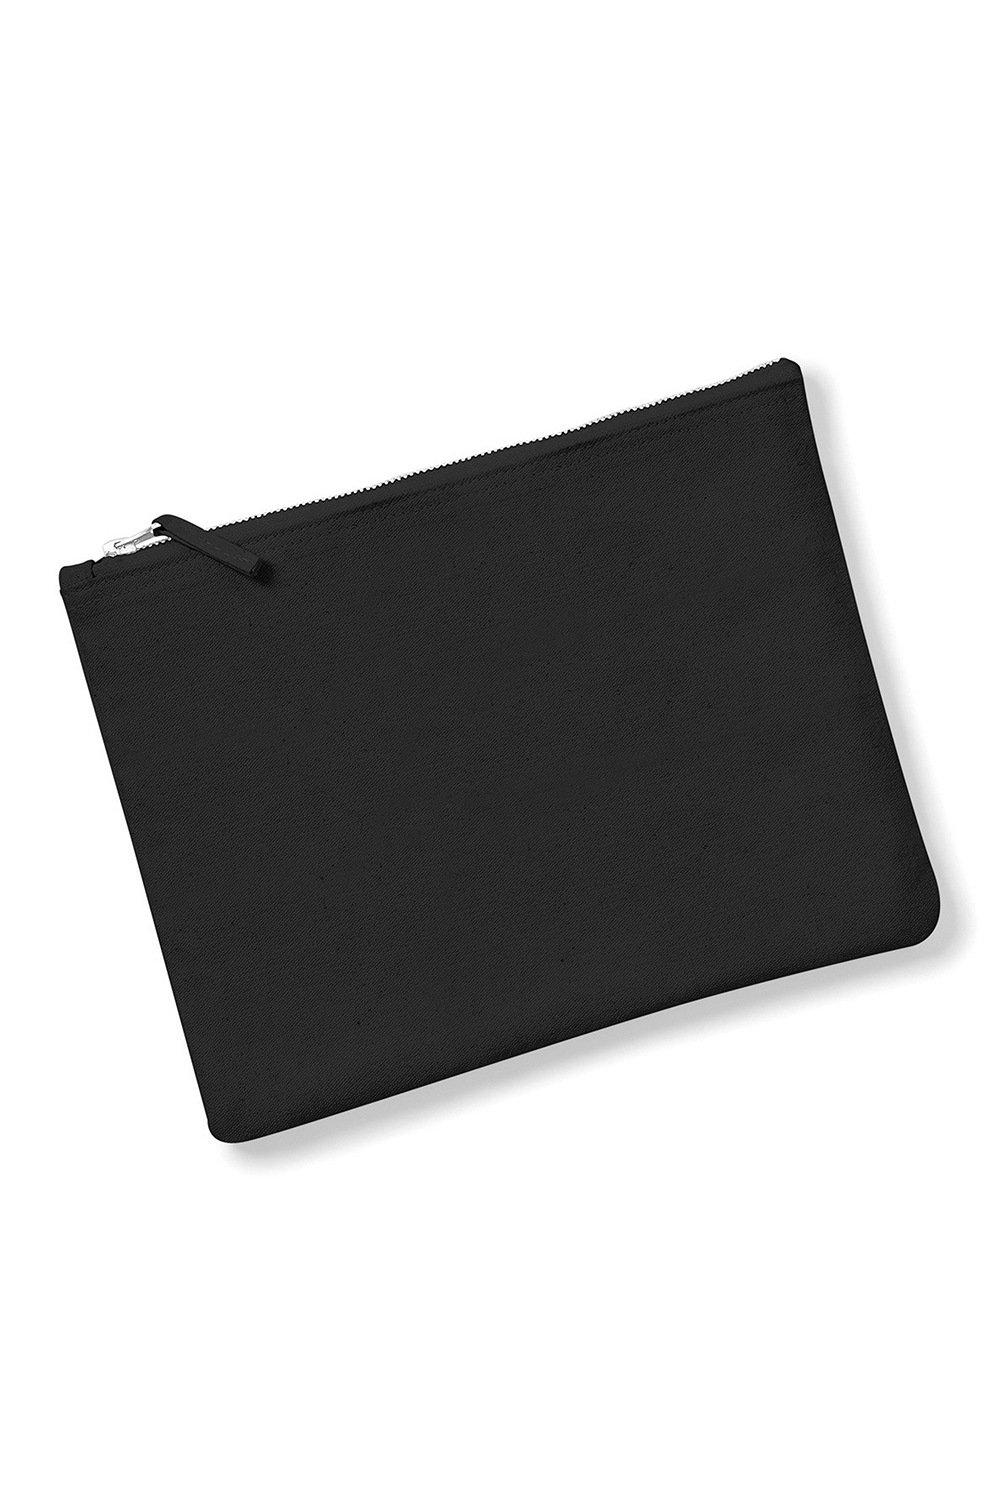 Холщовый футляр для аксессуаров (2 шт.) Westford Mill, черный 200 шт упаковка бумажные наклейки в винтажном стиле